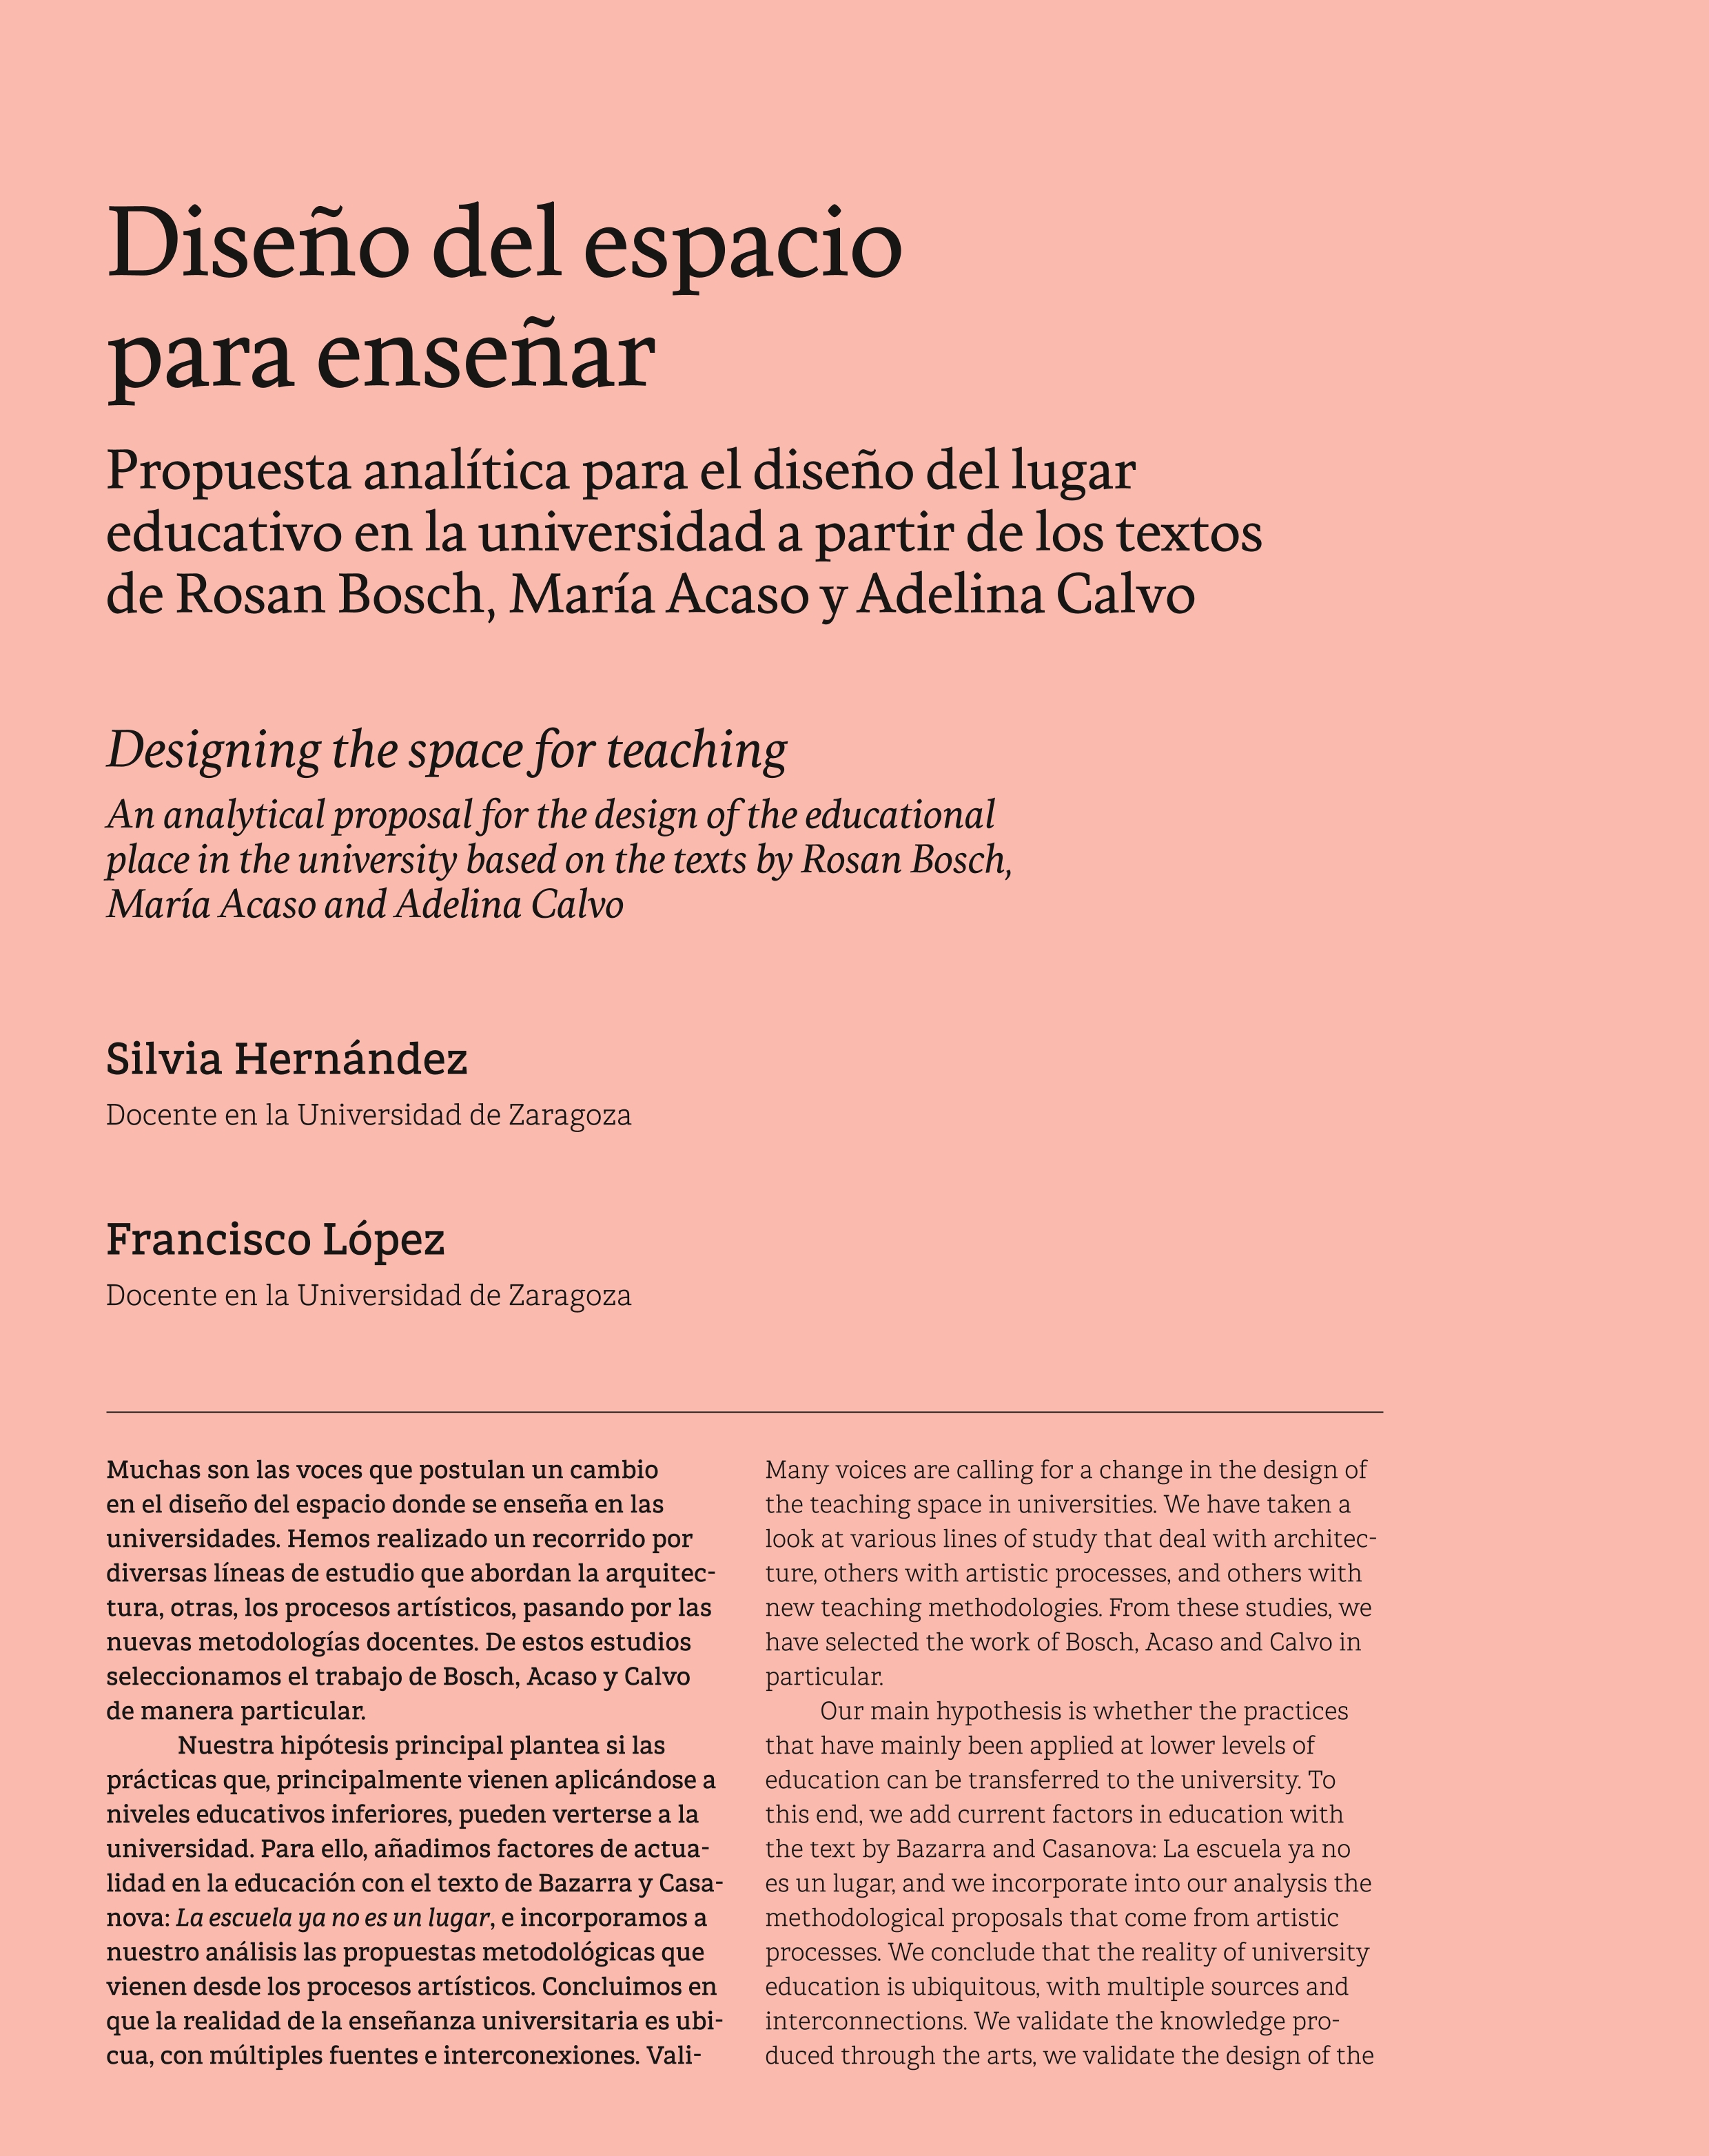 Diseño del espacio para enseñar. Propuesta analítica para el diseño del lugar educativo en la universidad a partir de los textos de Rosan Bosch, María Acaso y Adelina Calvo